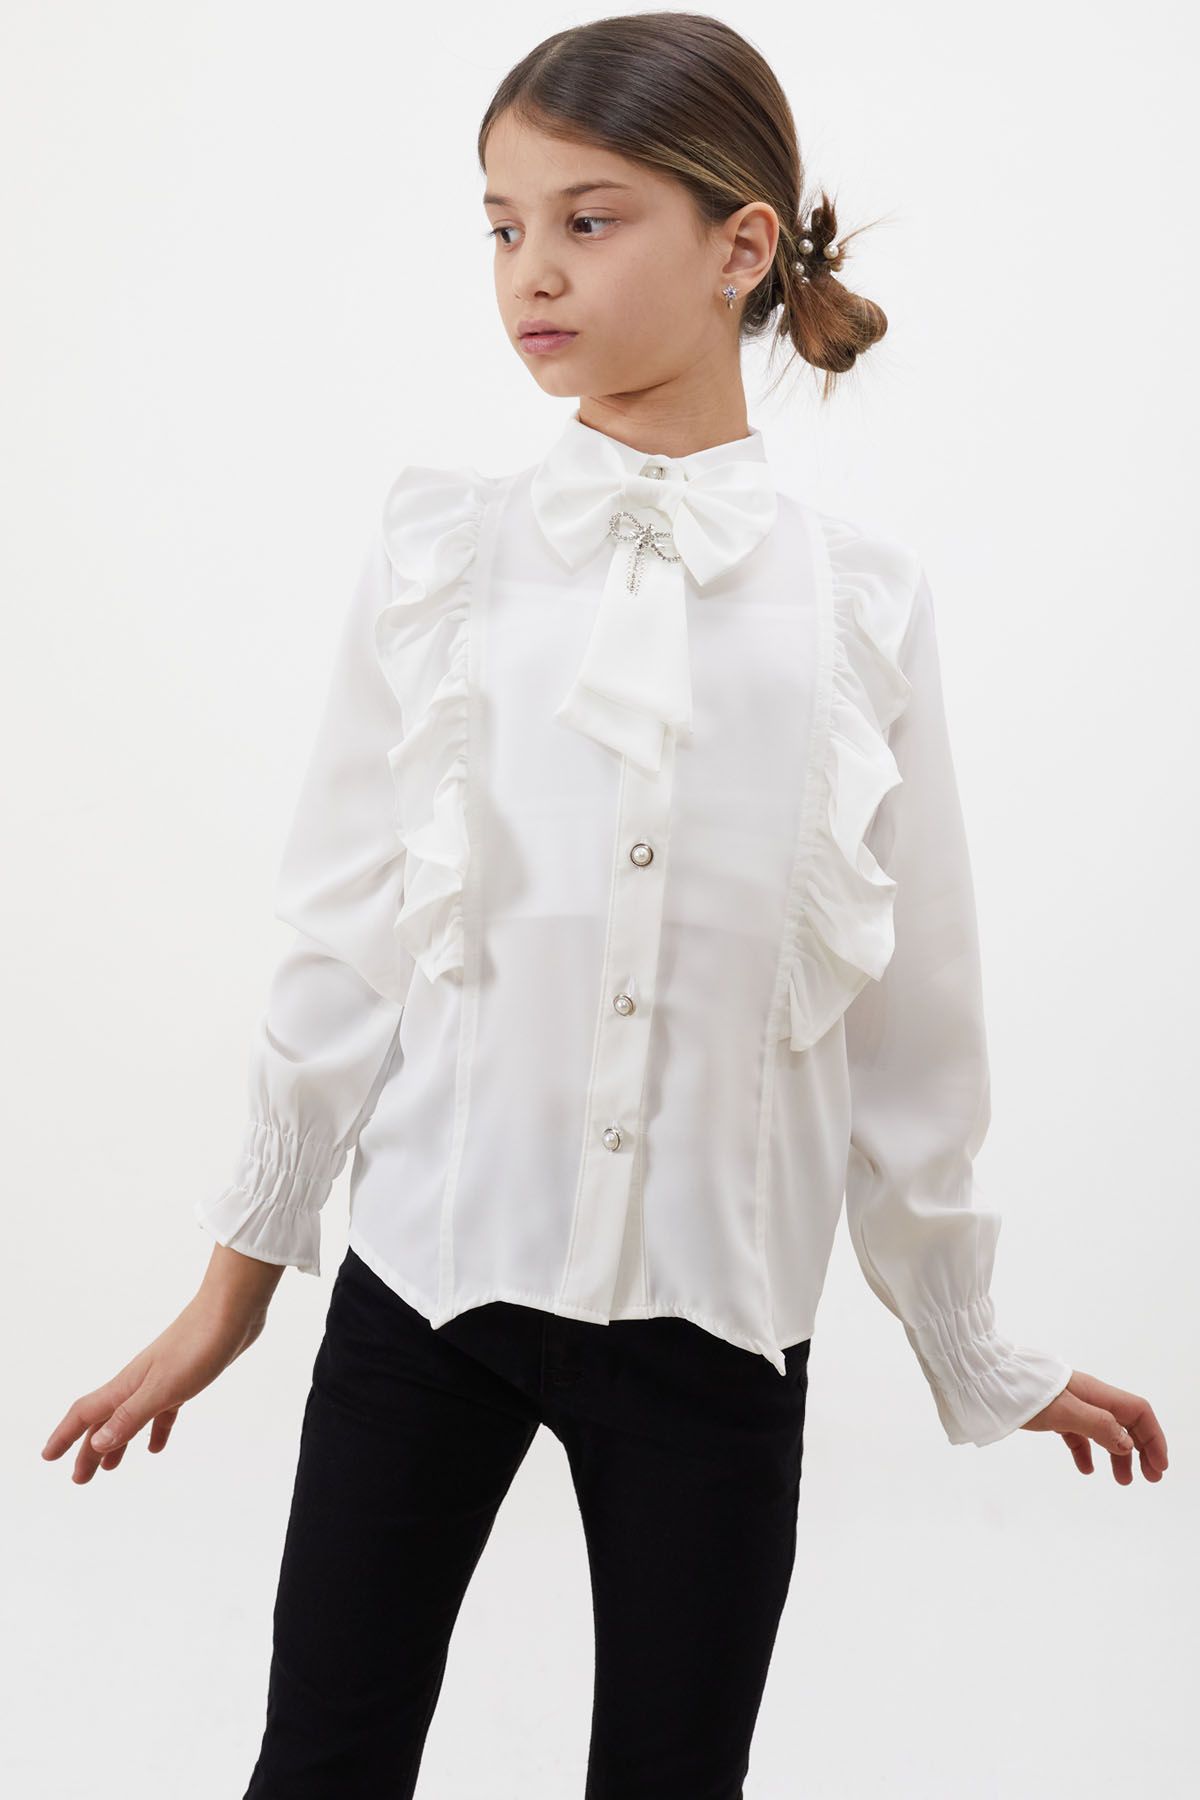 Cansın Mini Yakası Fiyonklu Düğmeli Kız Çocuk Beyaz Gömlek 18454